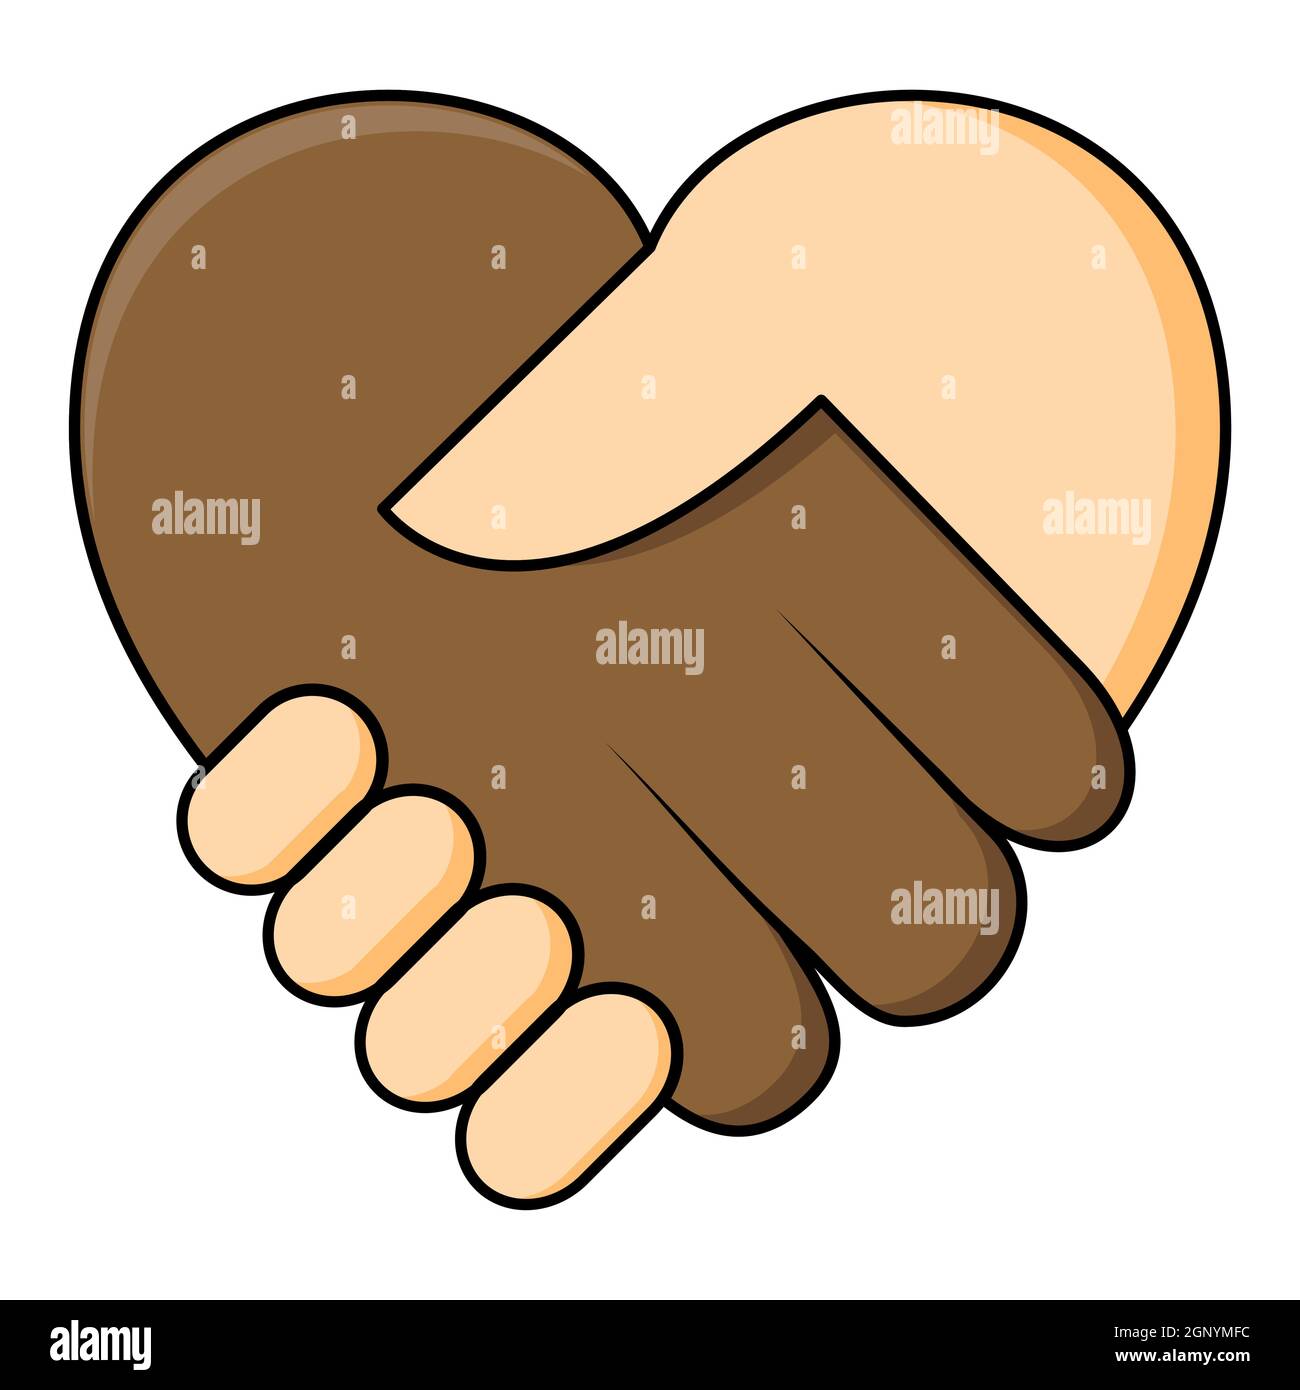 Kein Rassismus - Hand in Herzform schütteln. Zwei Hände dunkle und schöne Haut in einem Handschlag. Gleichheitskonzept Icon. Großartig auch für Symbol der Vereinbarung oder Vertrag zwischen verschiedenen ethnischen Zugehörigkeit. Stock Vektor